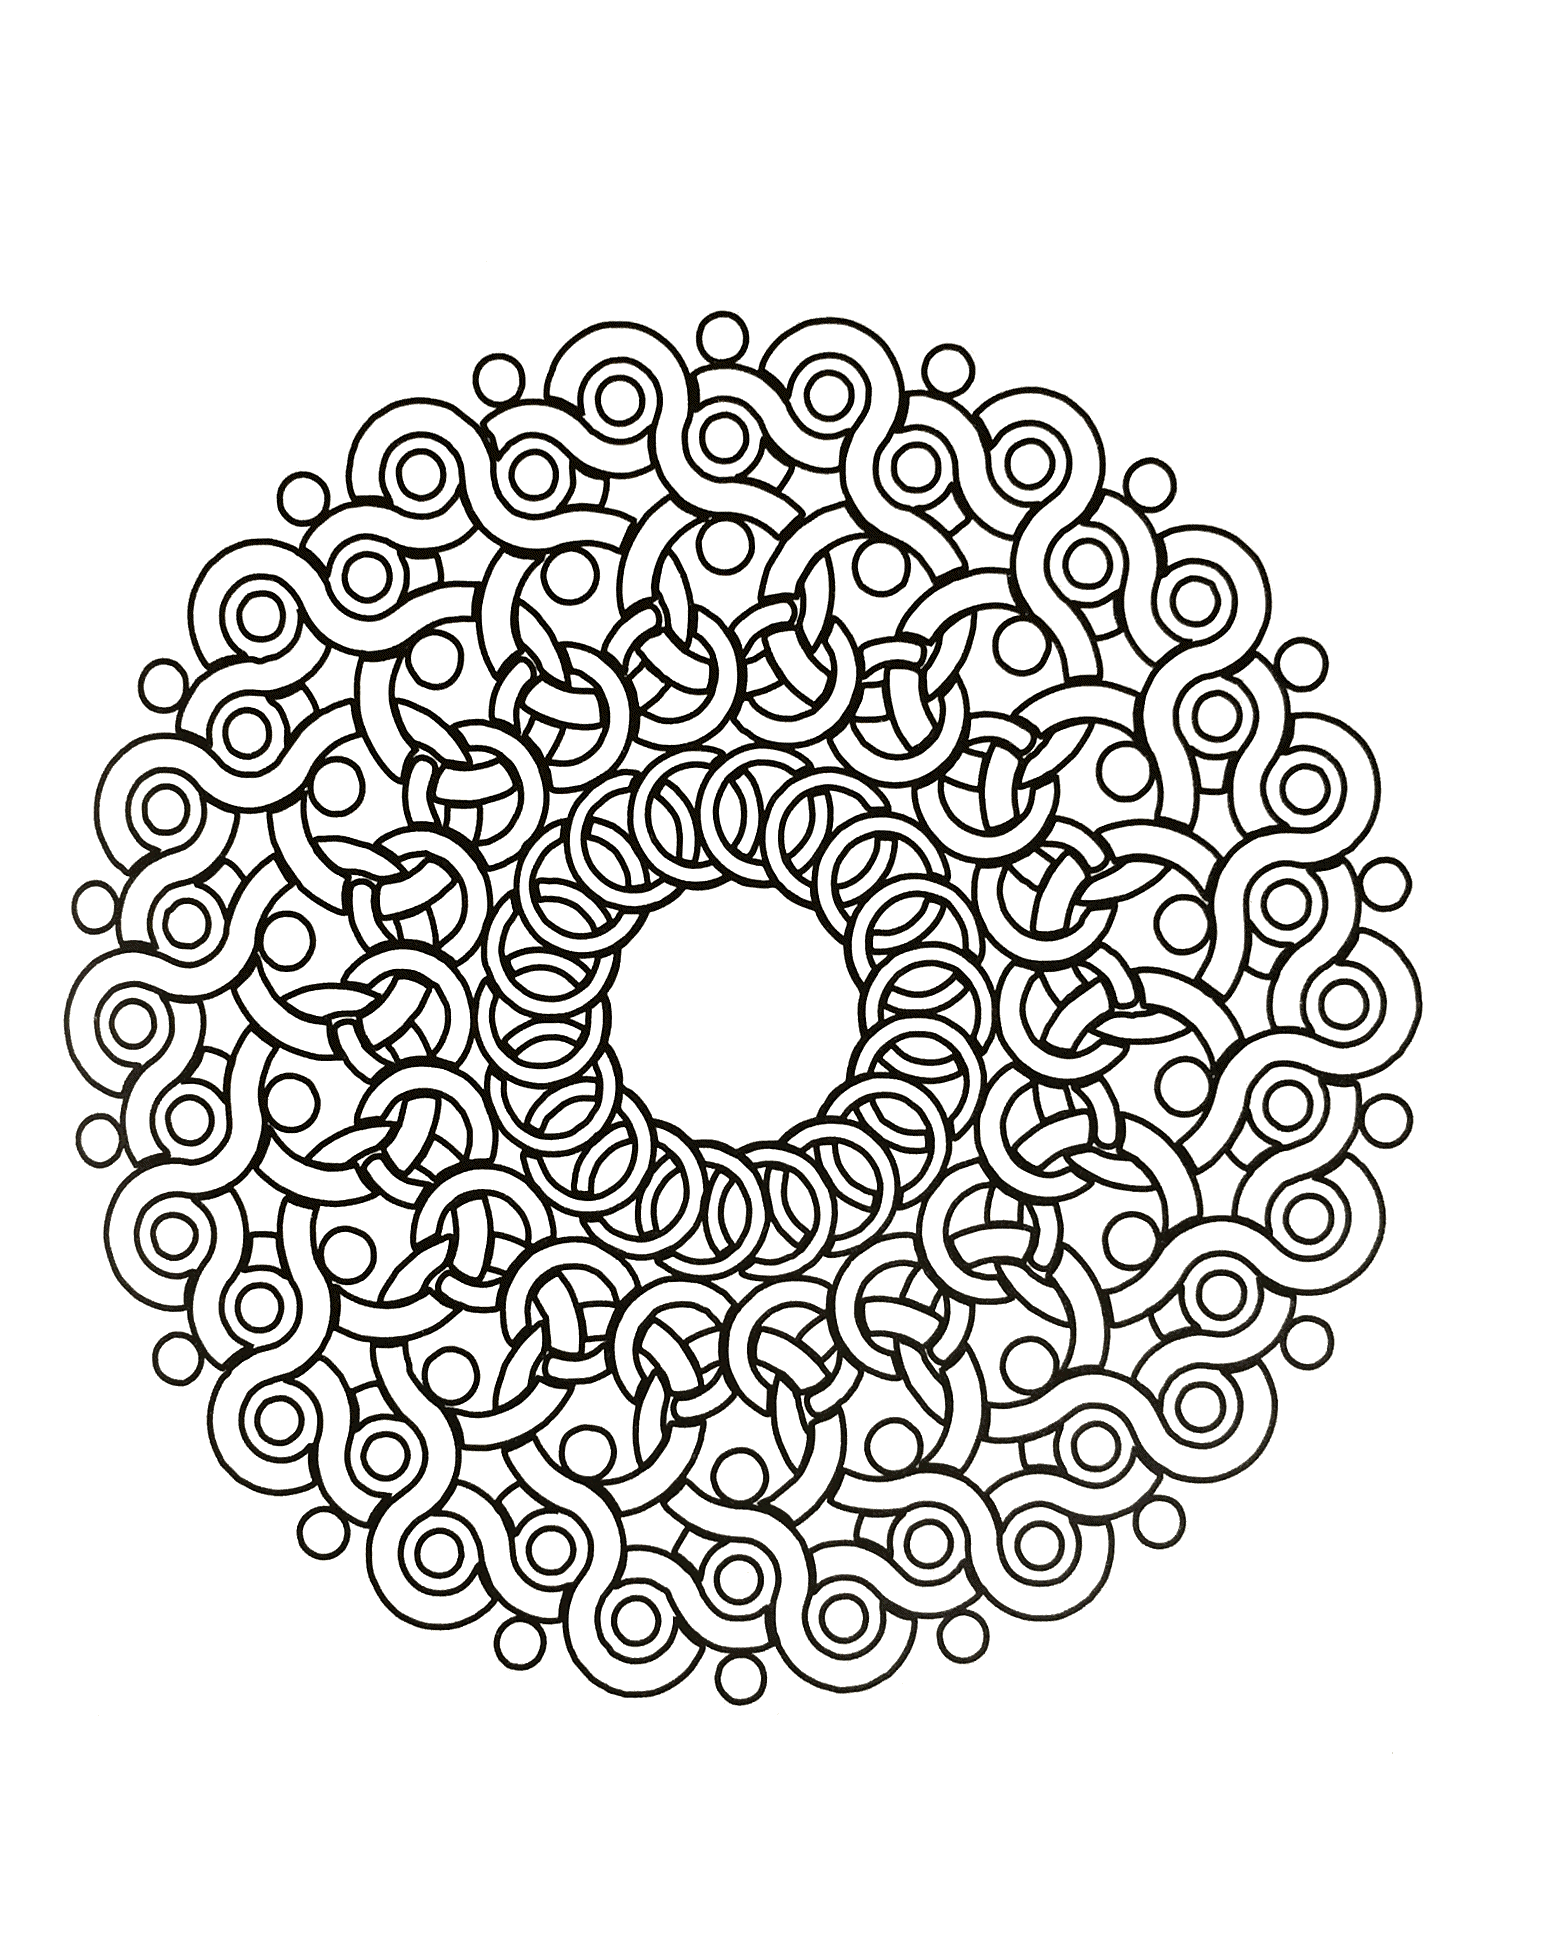 Un Mandala con forme che ricordano i rovi per i professionisti! Decine e decine di piccole zone che aspettano solo qualche colore scelto con gusto.